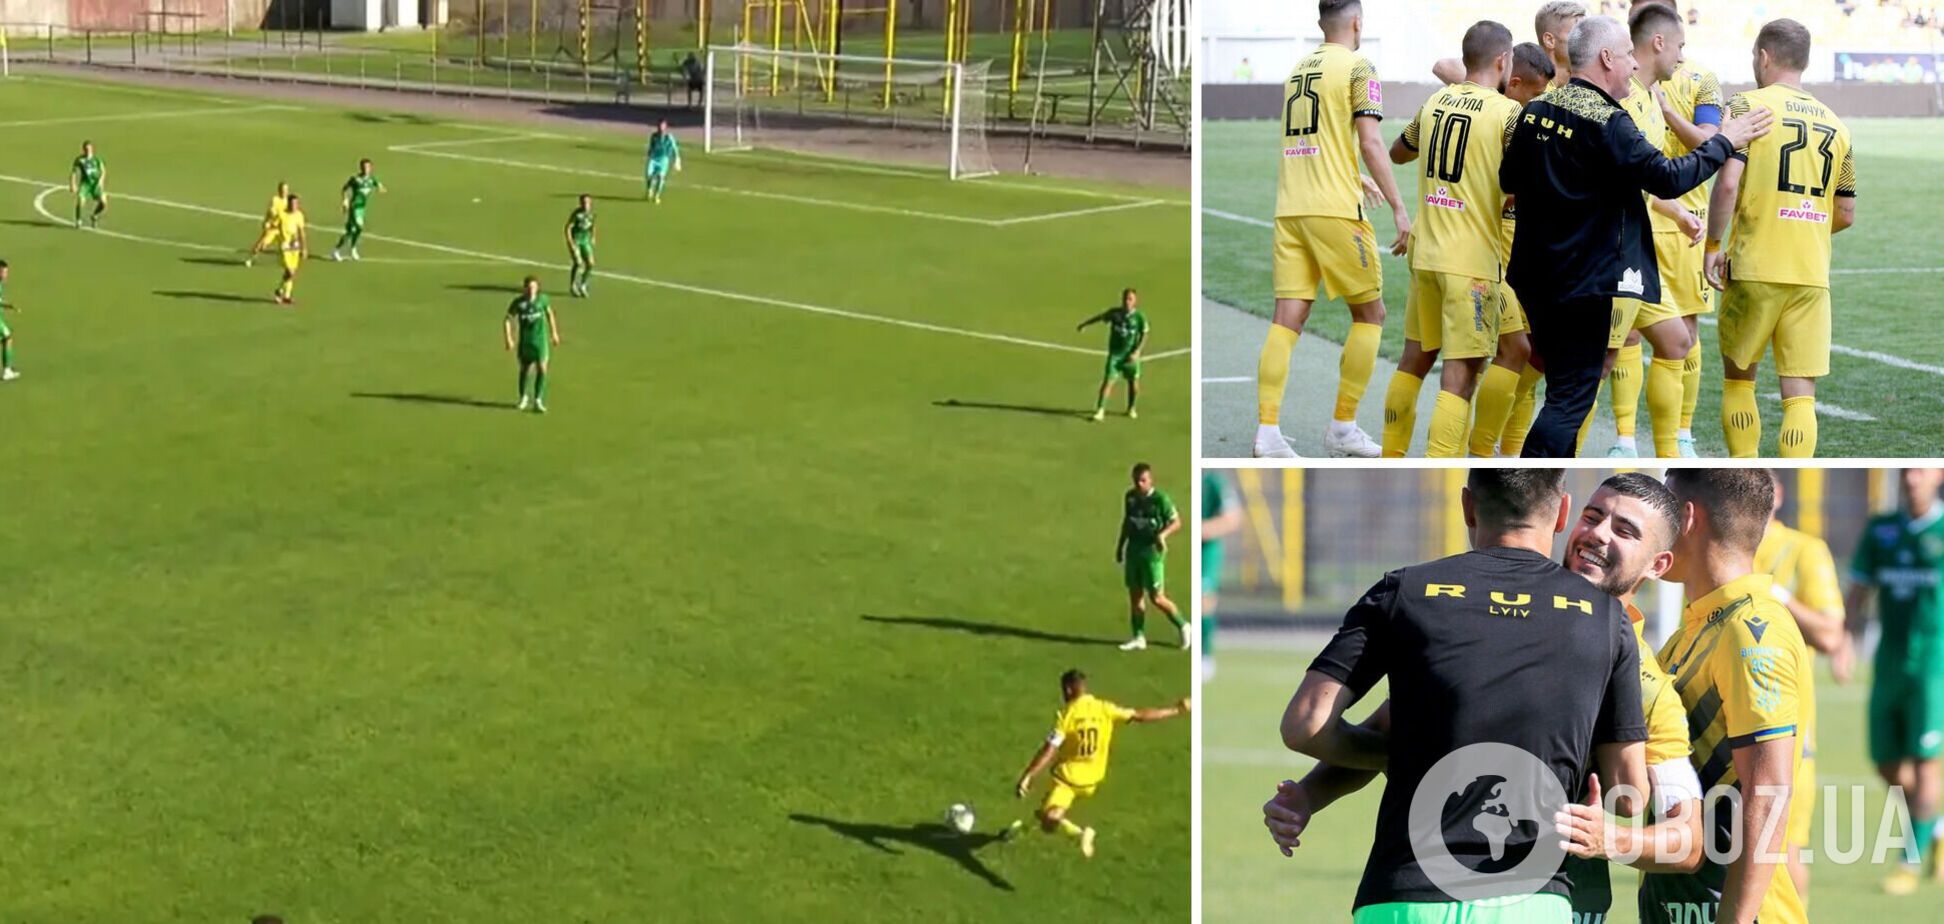 Экс-футболист сборной Украины забил невероятный 'радиоуправляемый' гол. Видео